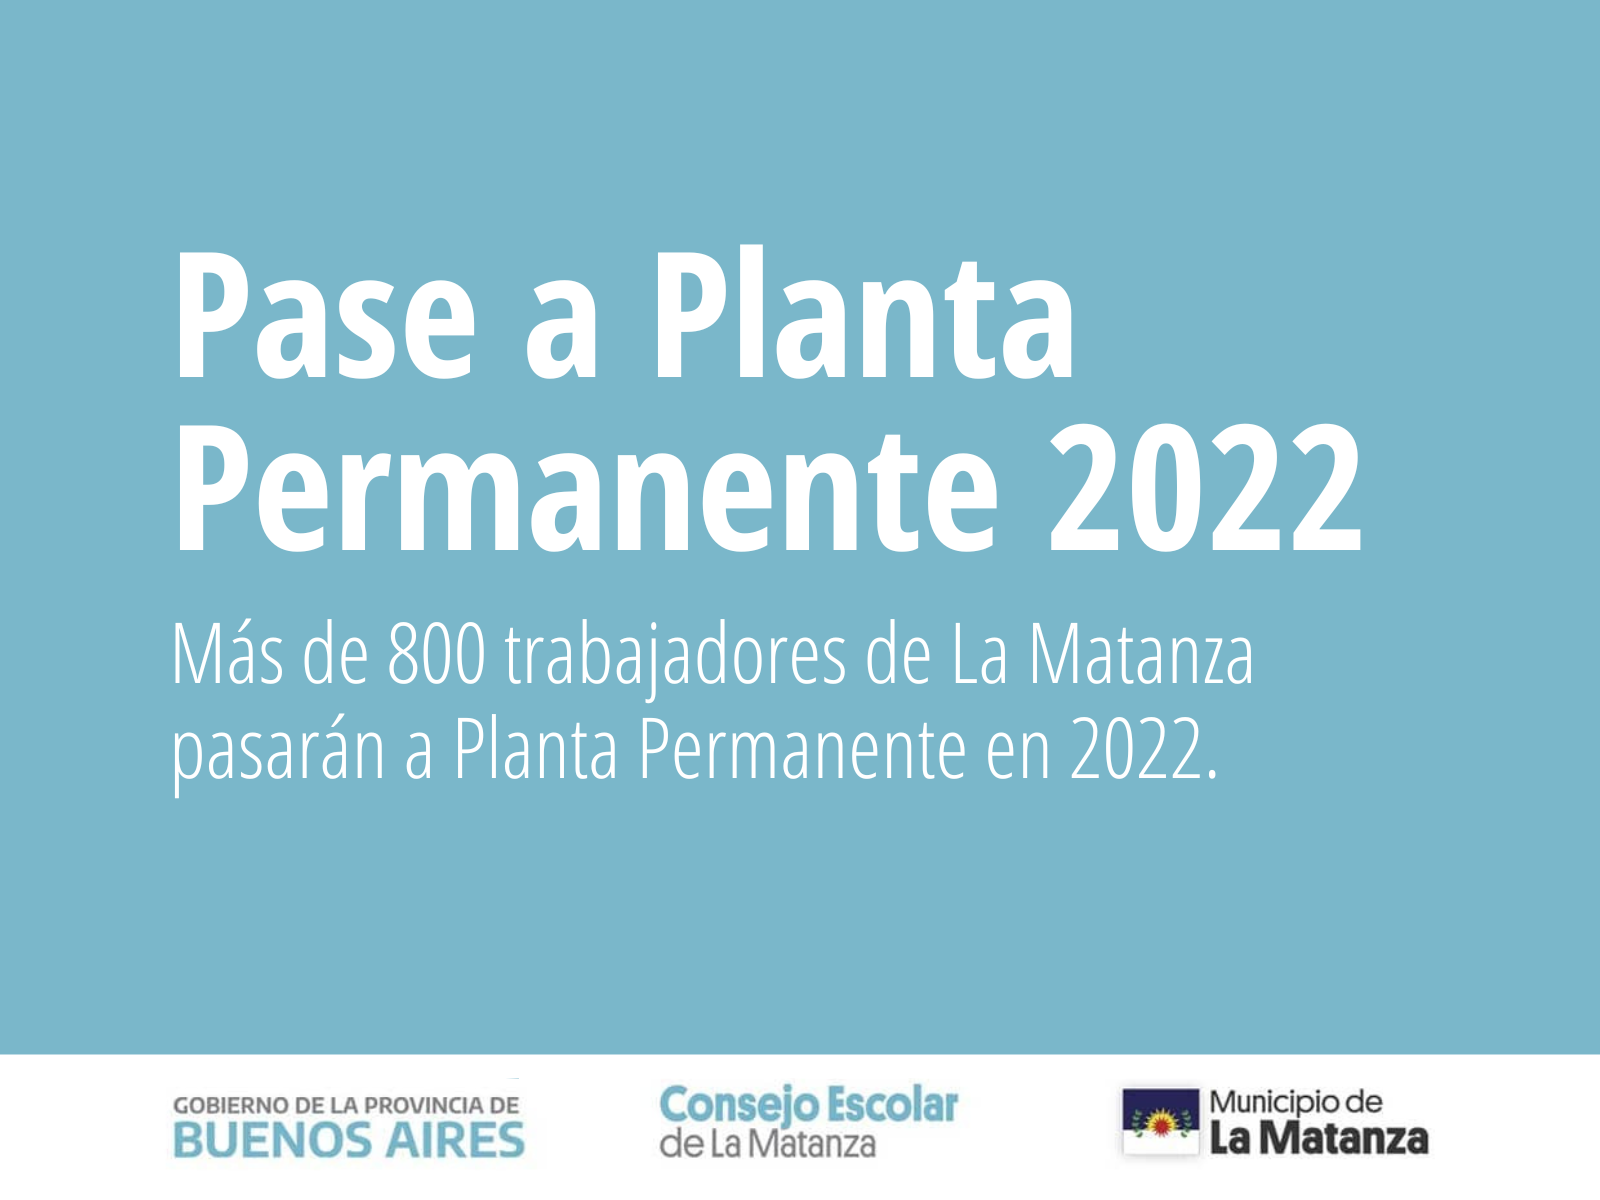 Más de 800 trabajadores de la educación pasarán a Planta Permanente en 2022